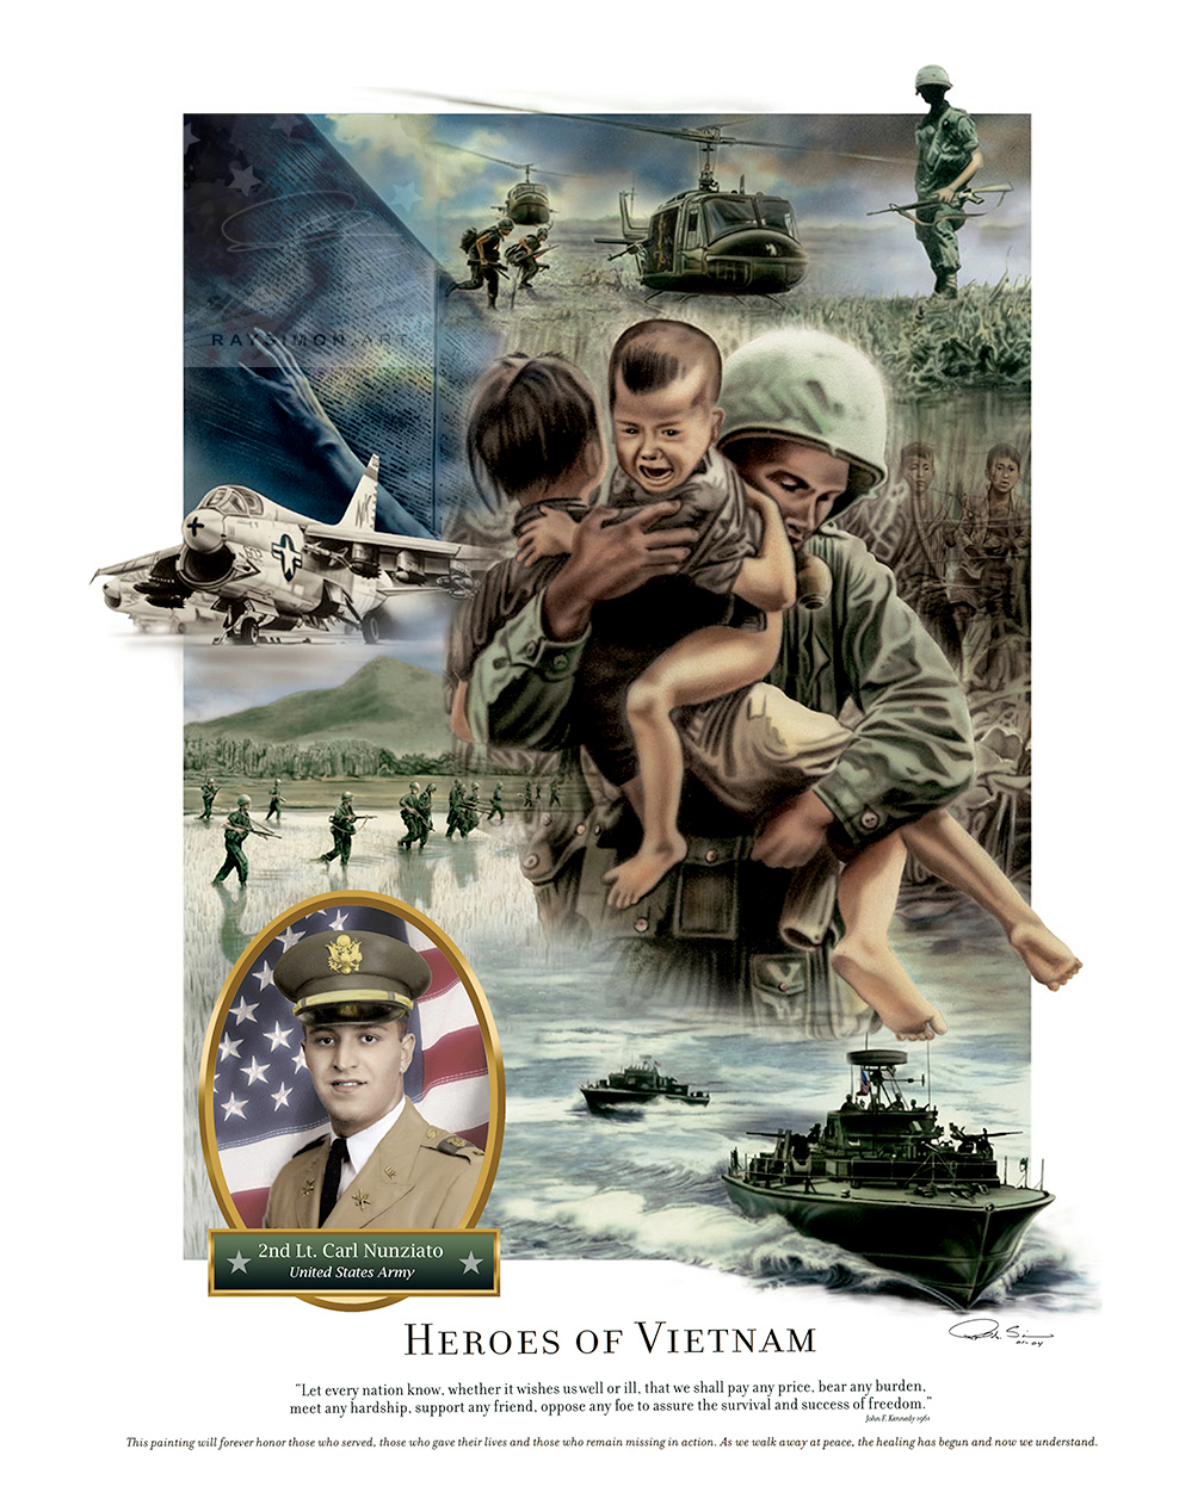 Vietnam War Artwork - 'Heroes of Vietnam'